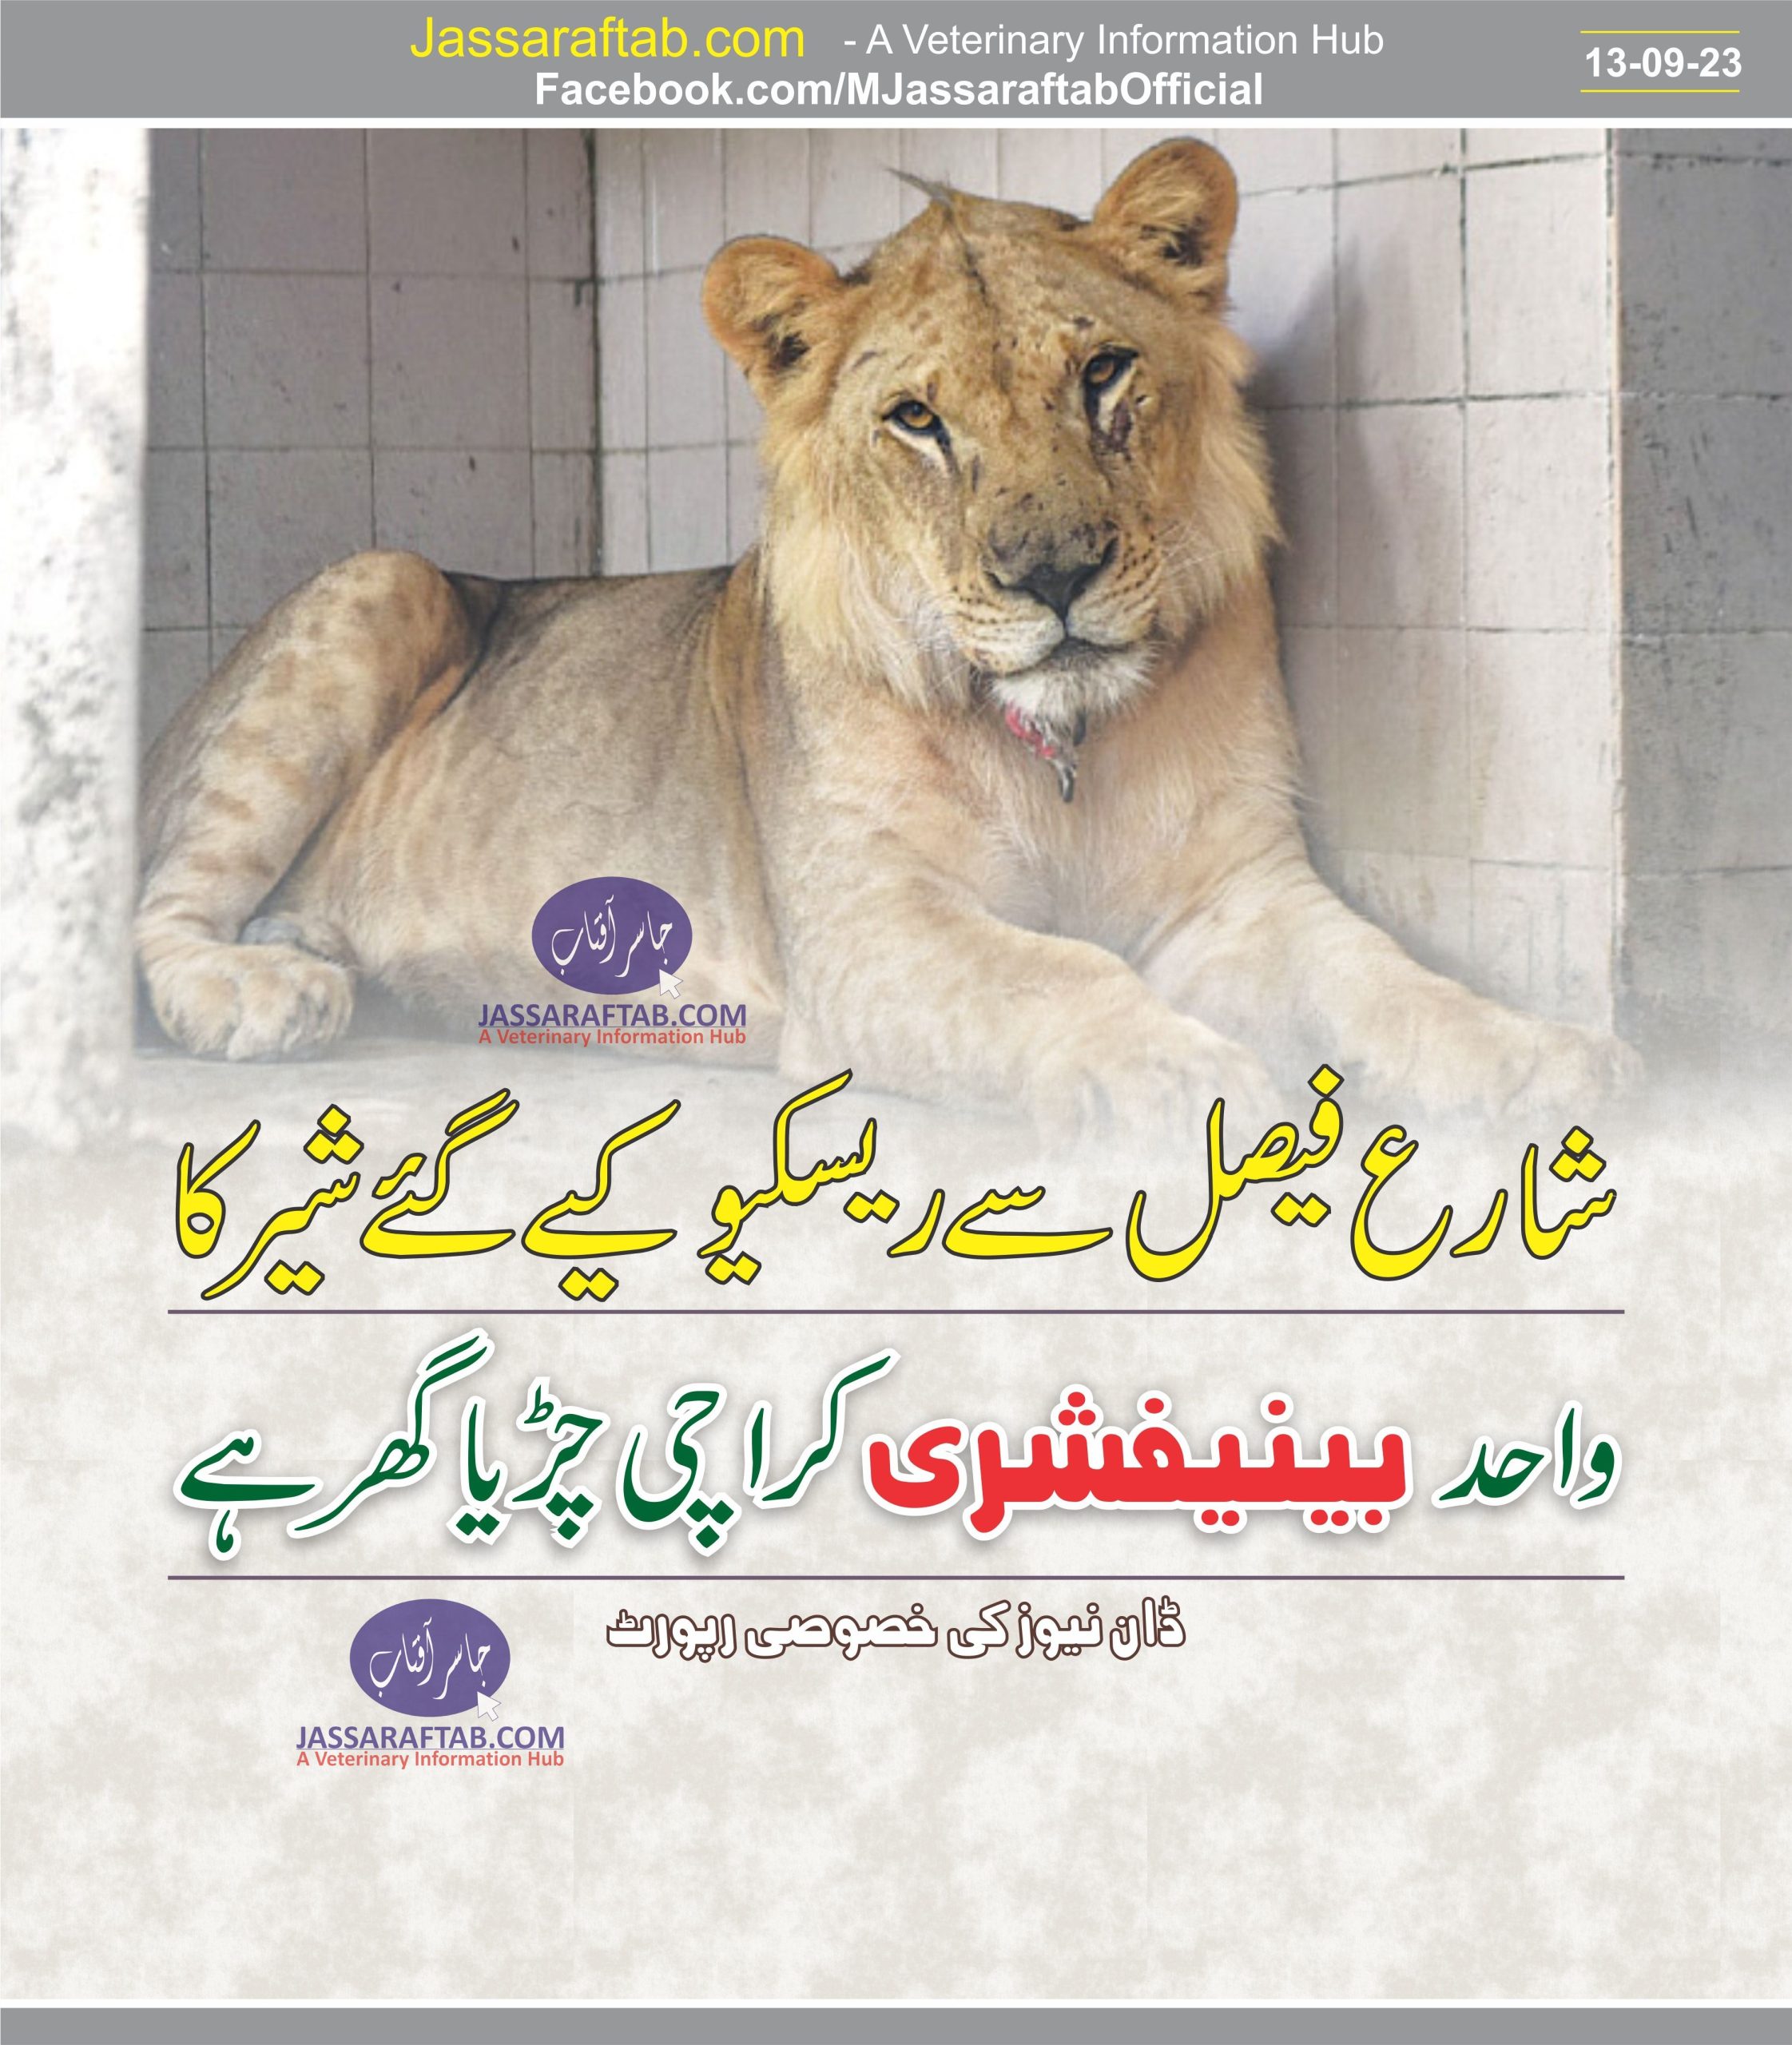 Big cat spending rest of its life in Karachi zoo